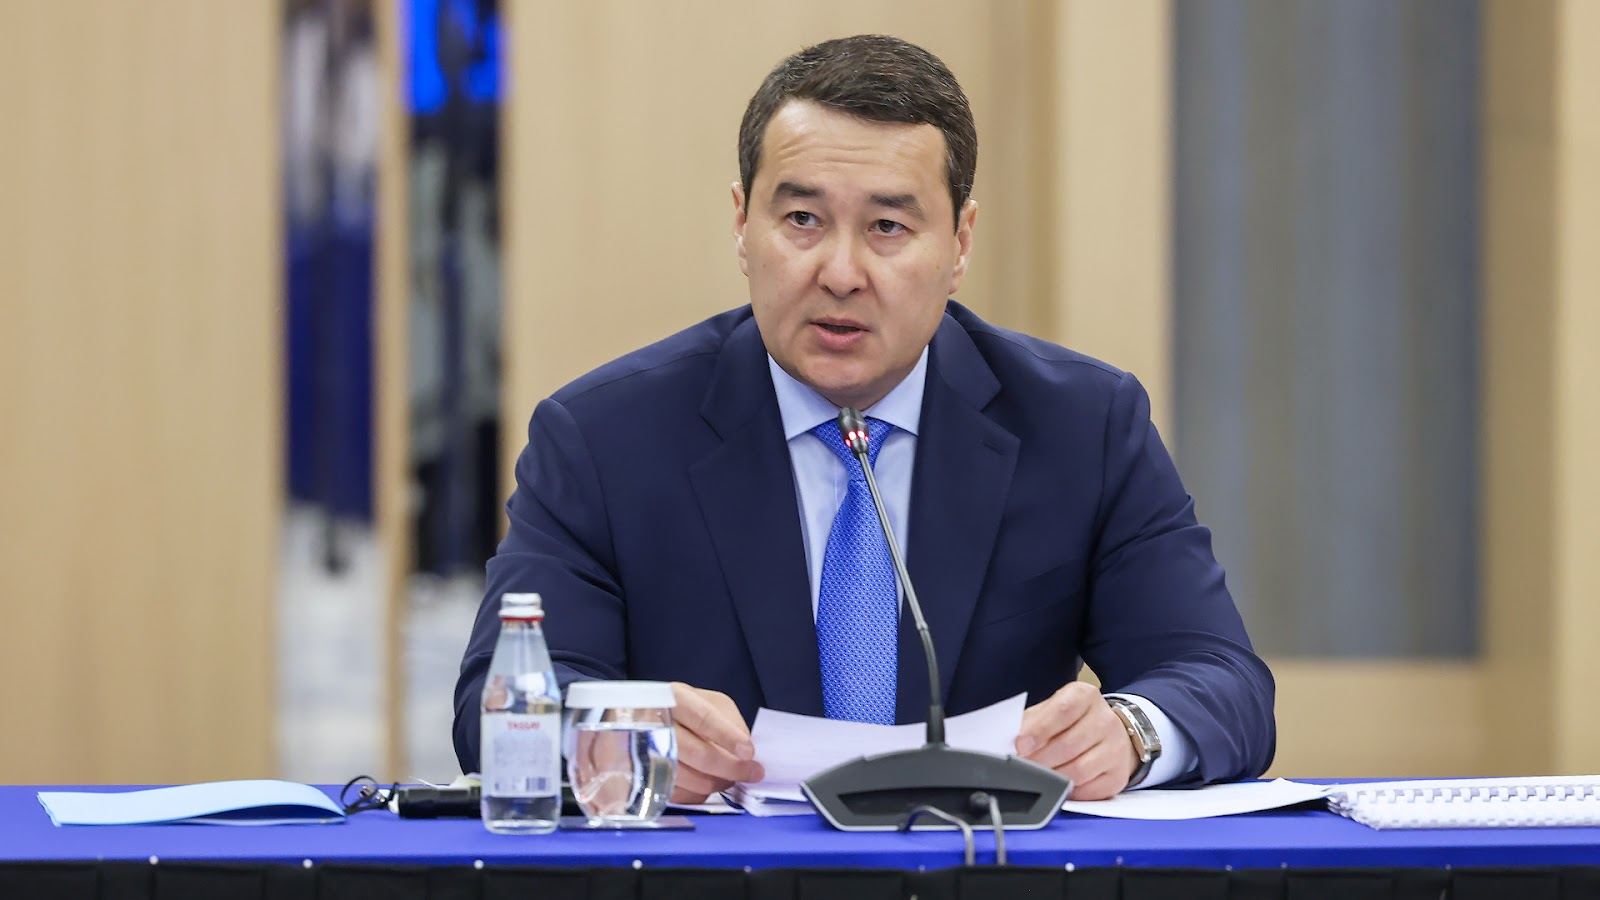 Казахстан интересует сотрудничество по переводу угольных станций на газ - премьер